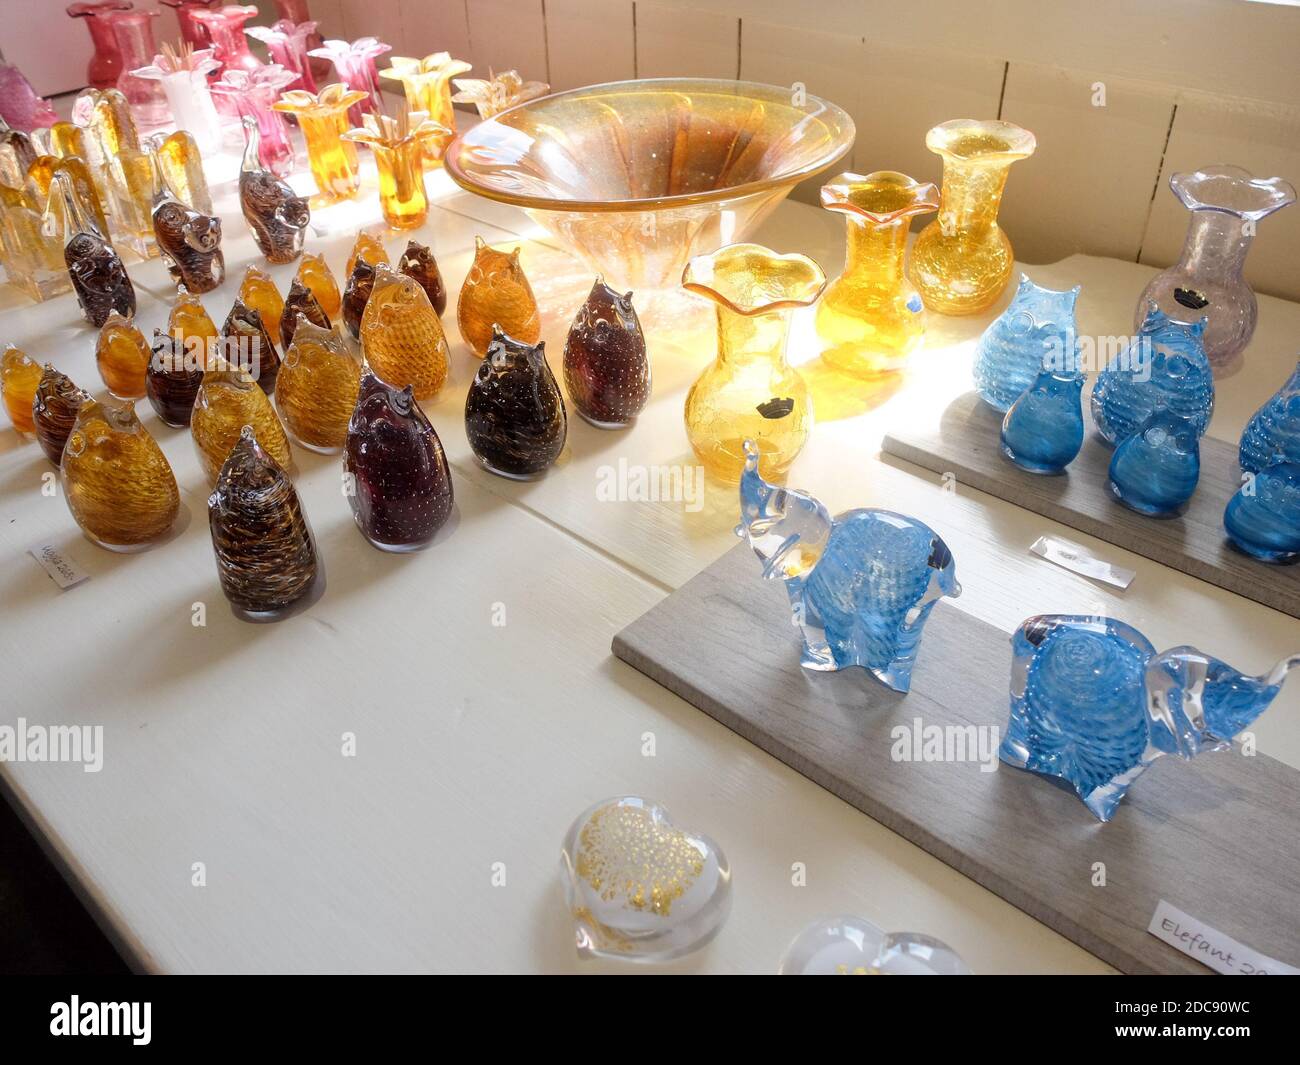 Objets en verre colorés à un artisan du verre, Skansen, Stockholm - Suède  Photo Stock - Alamy